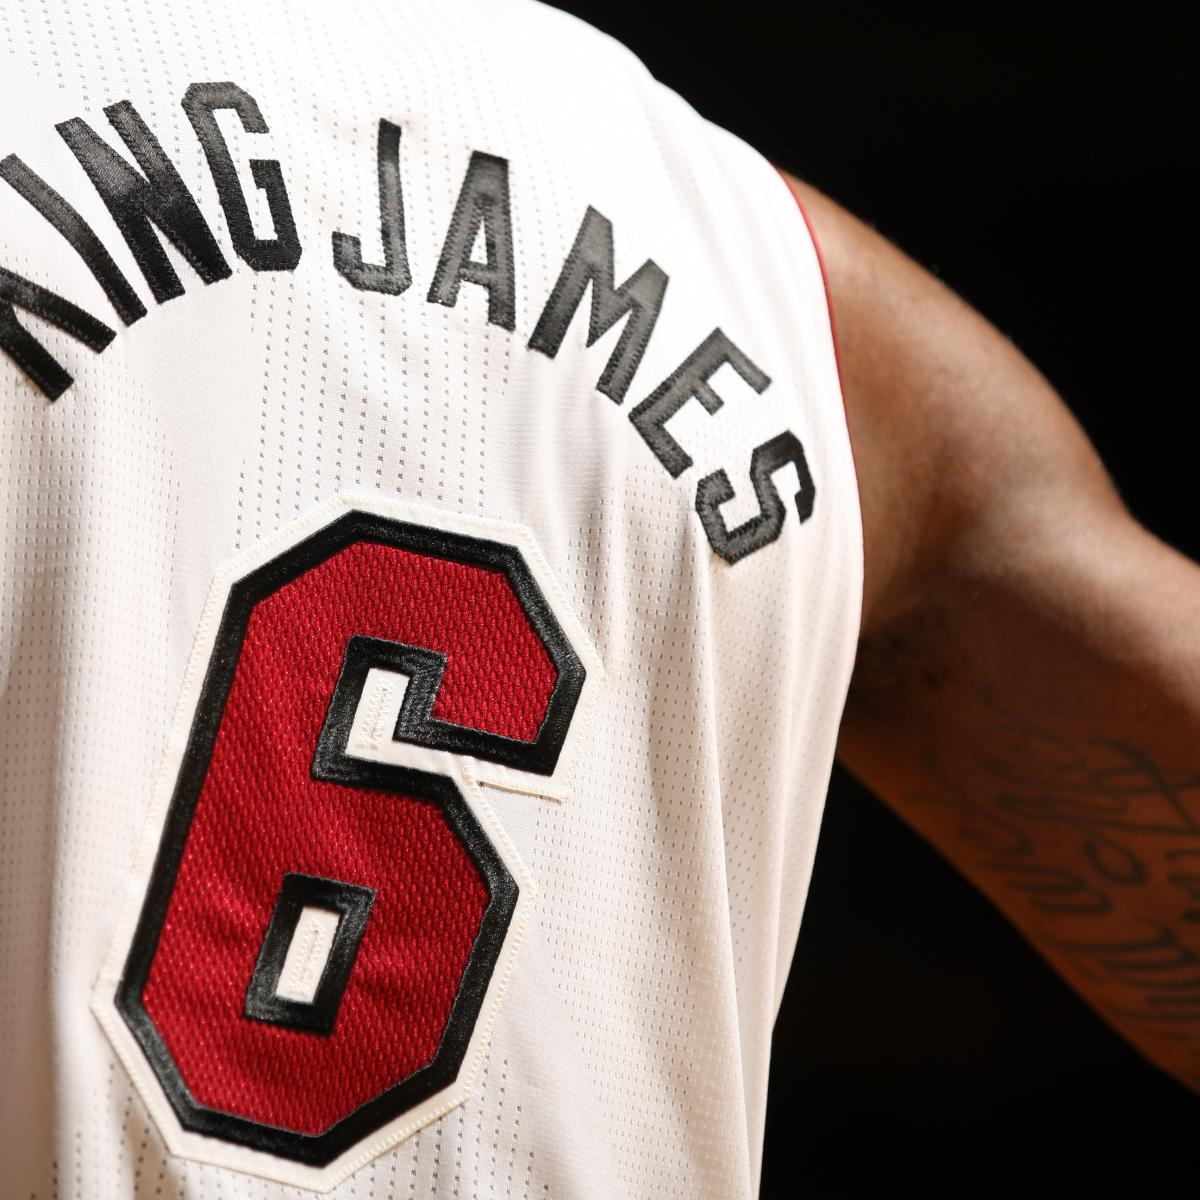 Is this LeBron James Mamba Jersey legit or fake? : r/basketballjerseys